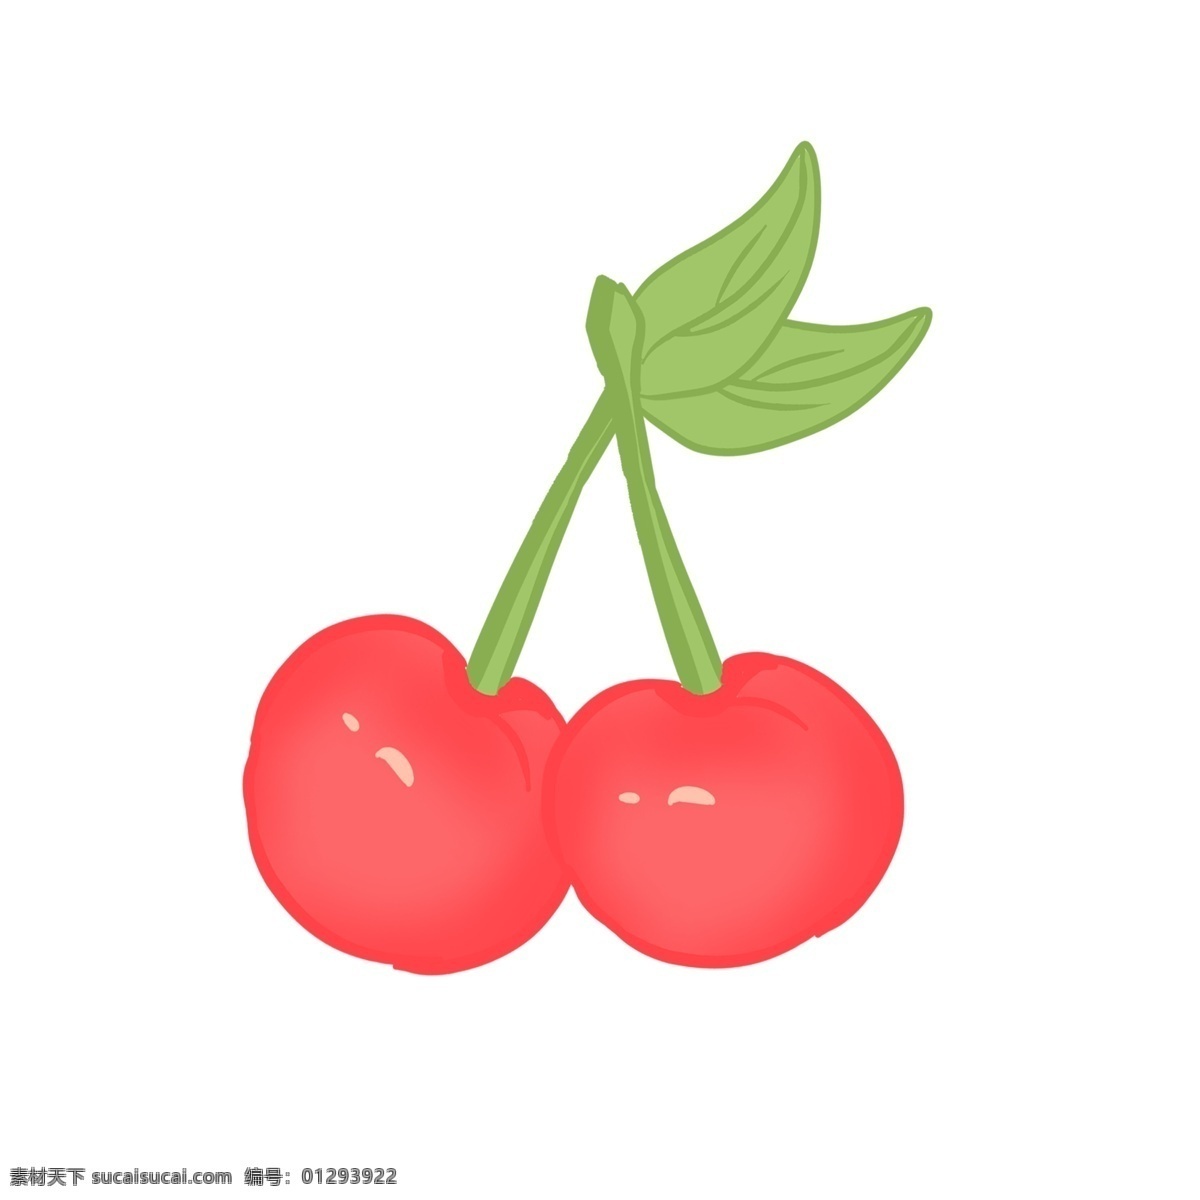 五月 上市 新鲜 大 樱桃 红果 绿叶 酸甜 可口 浆果 水分 开胃 果香 李属植物 水果 过节 果盘 食用